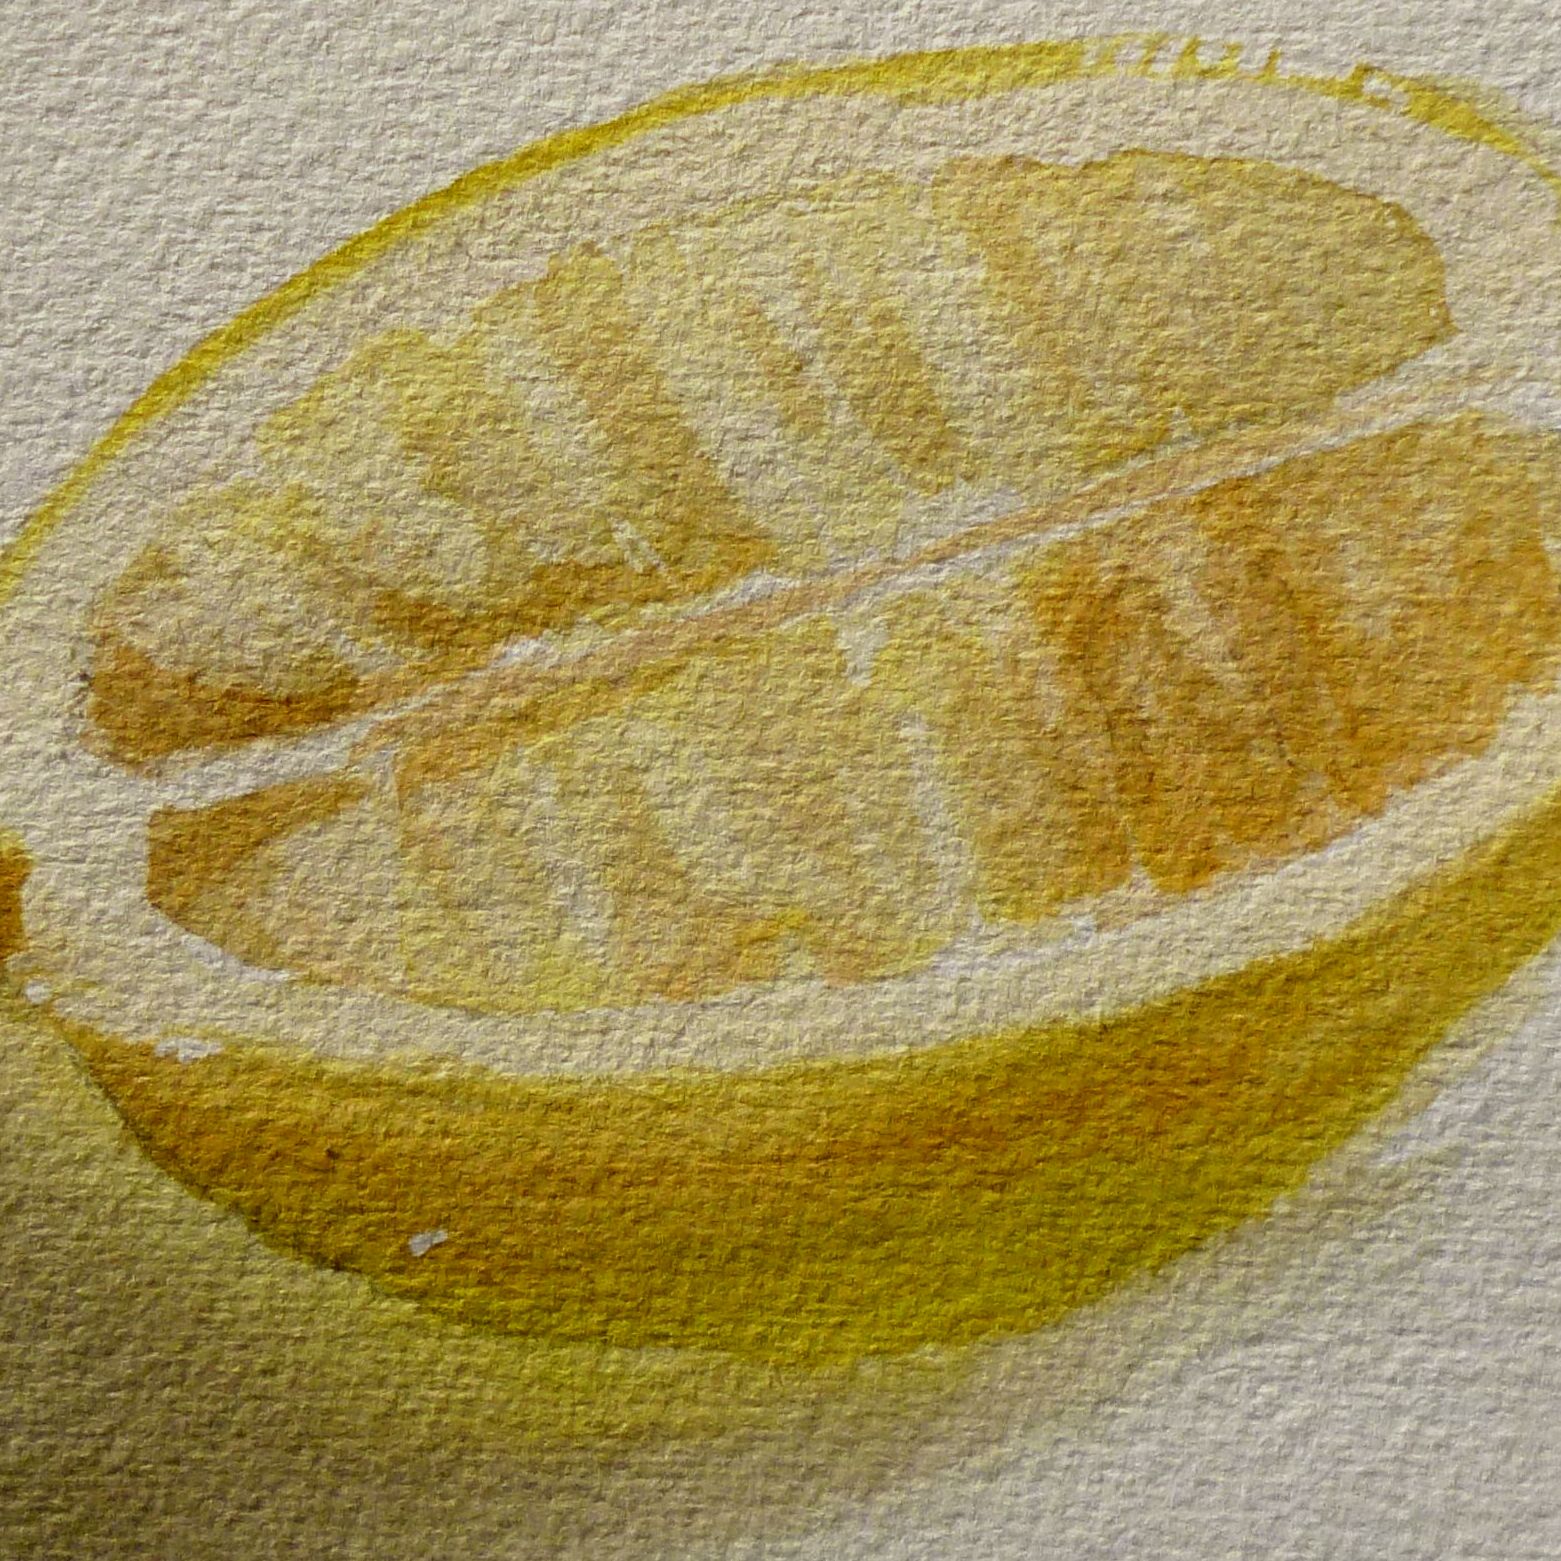 Watercolor Texture Techniques